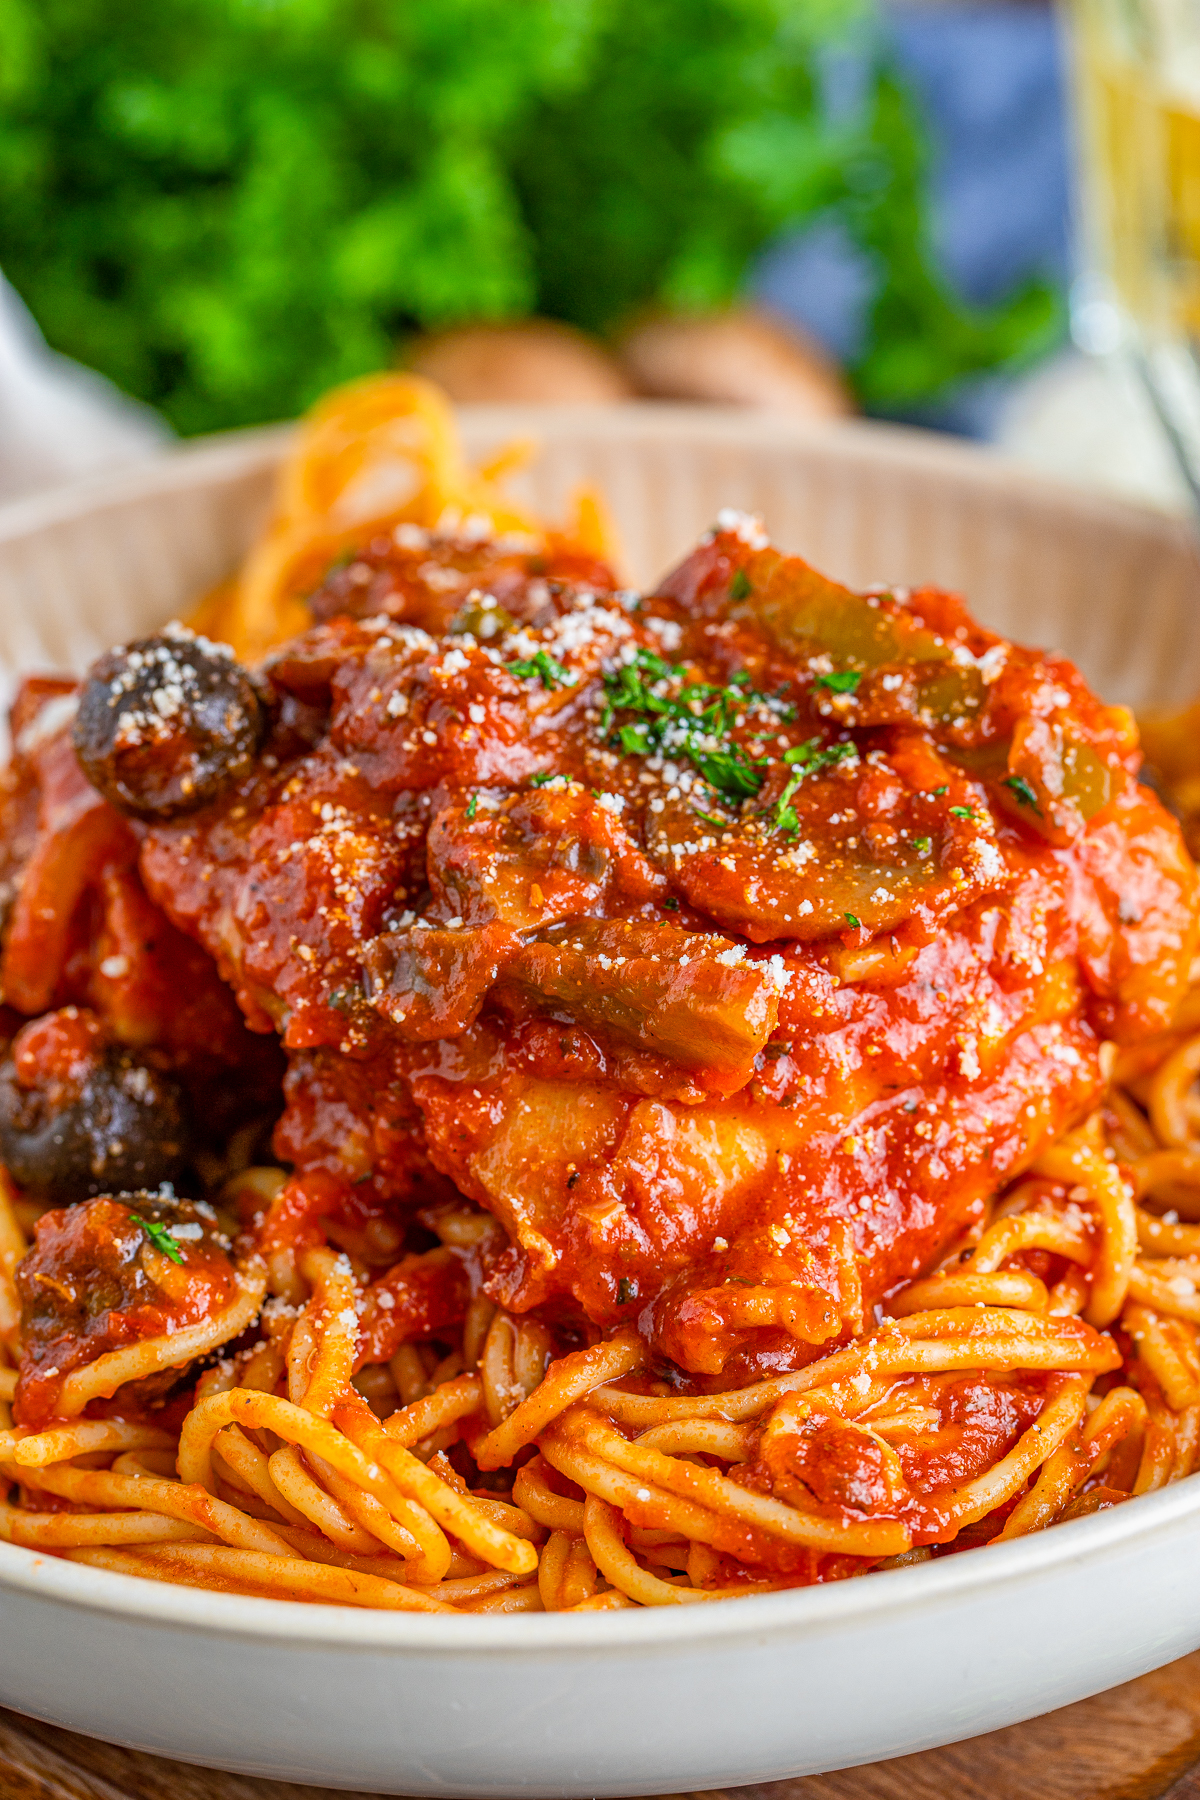 Chicken Cacciatore Recipe over spaghetti in bowl garnished.